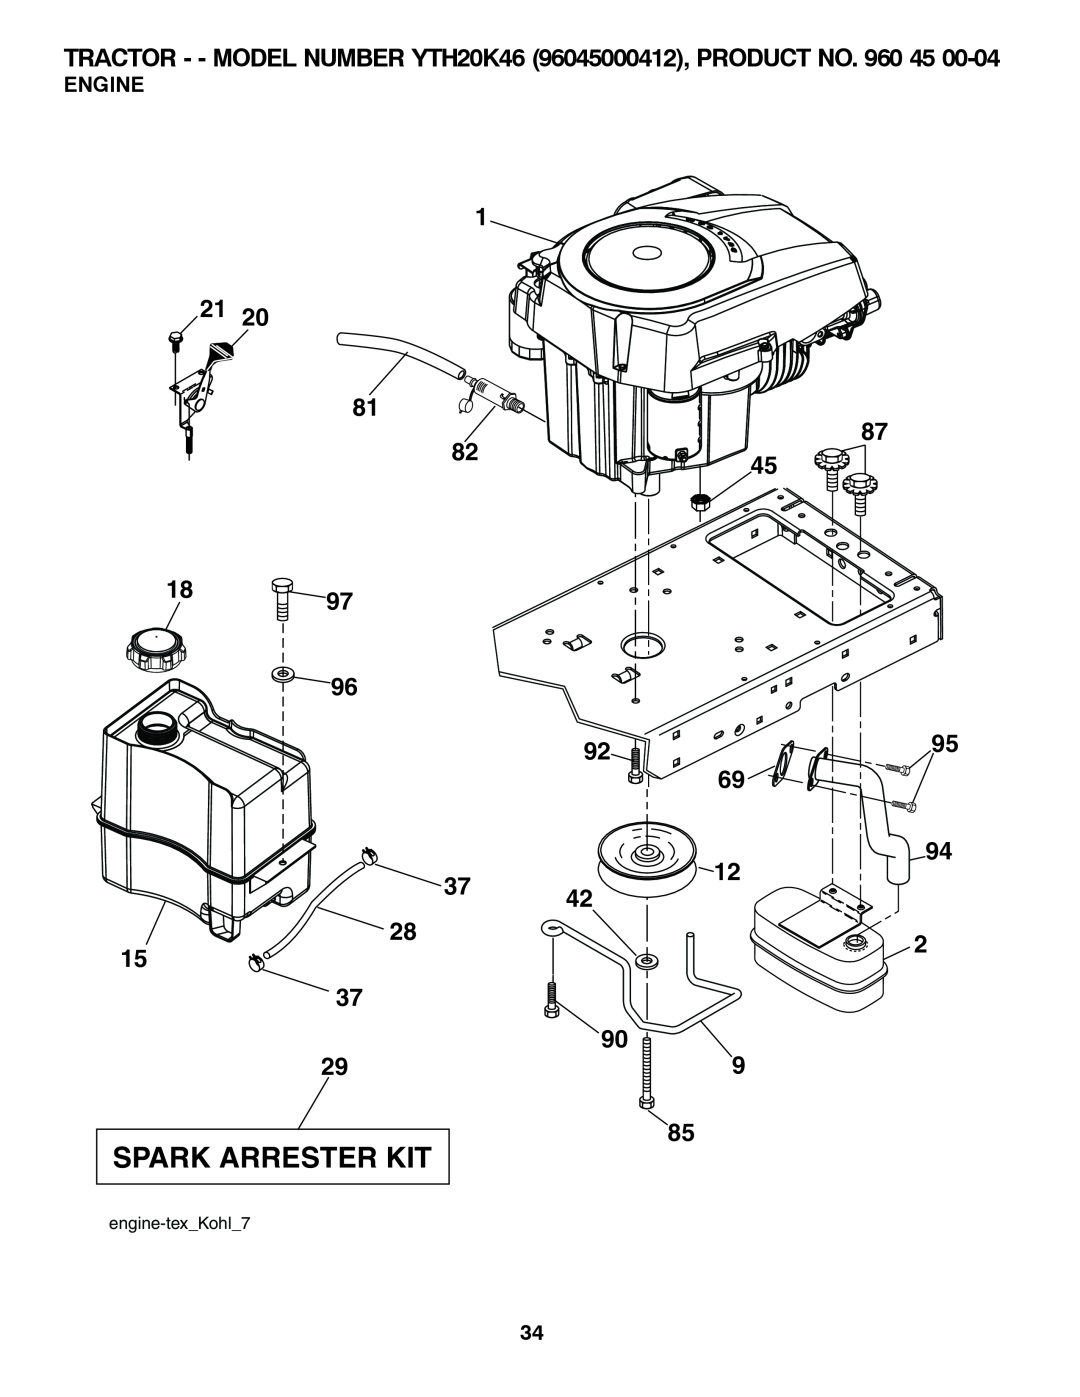 Husqvarna owner manual Engine, Spark Arrester Kit, TRACTOR - - MODEL NUMBER YTH20K46 96045000412, PRODUCT NO. 960 45 